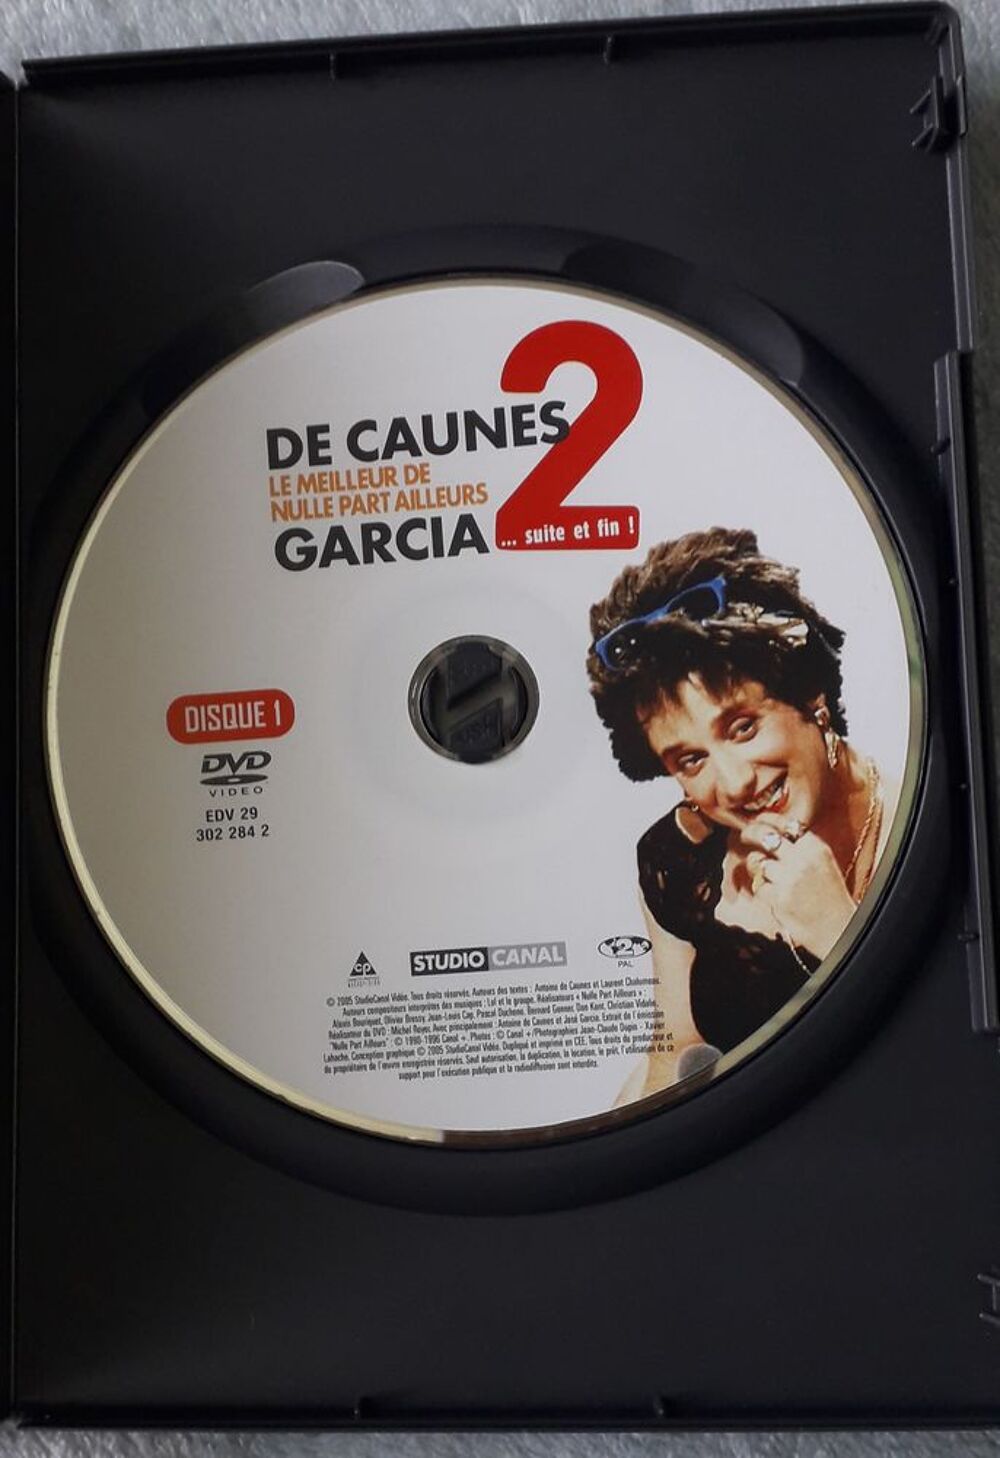 2 DVD : De Caunes et Garcia, le meilleur de nulle part aille DVD et blu-ray